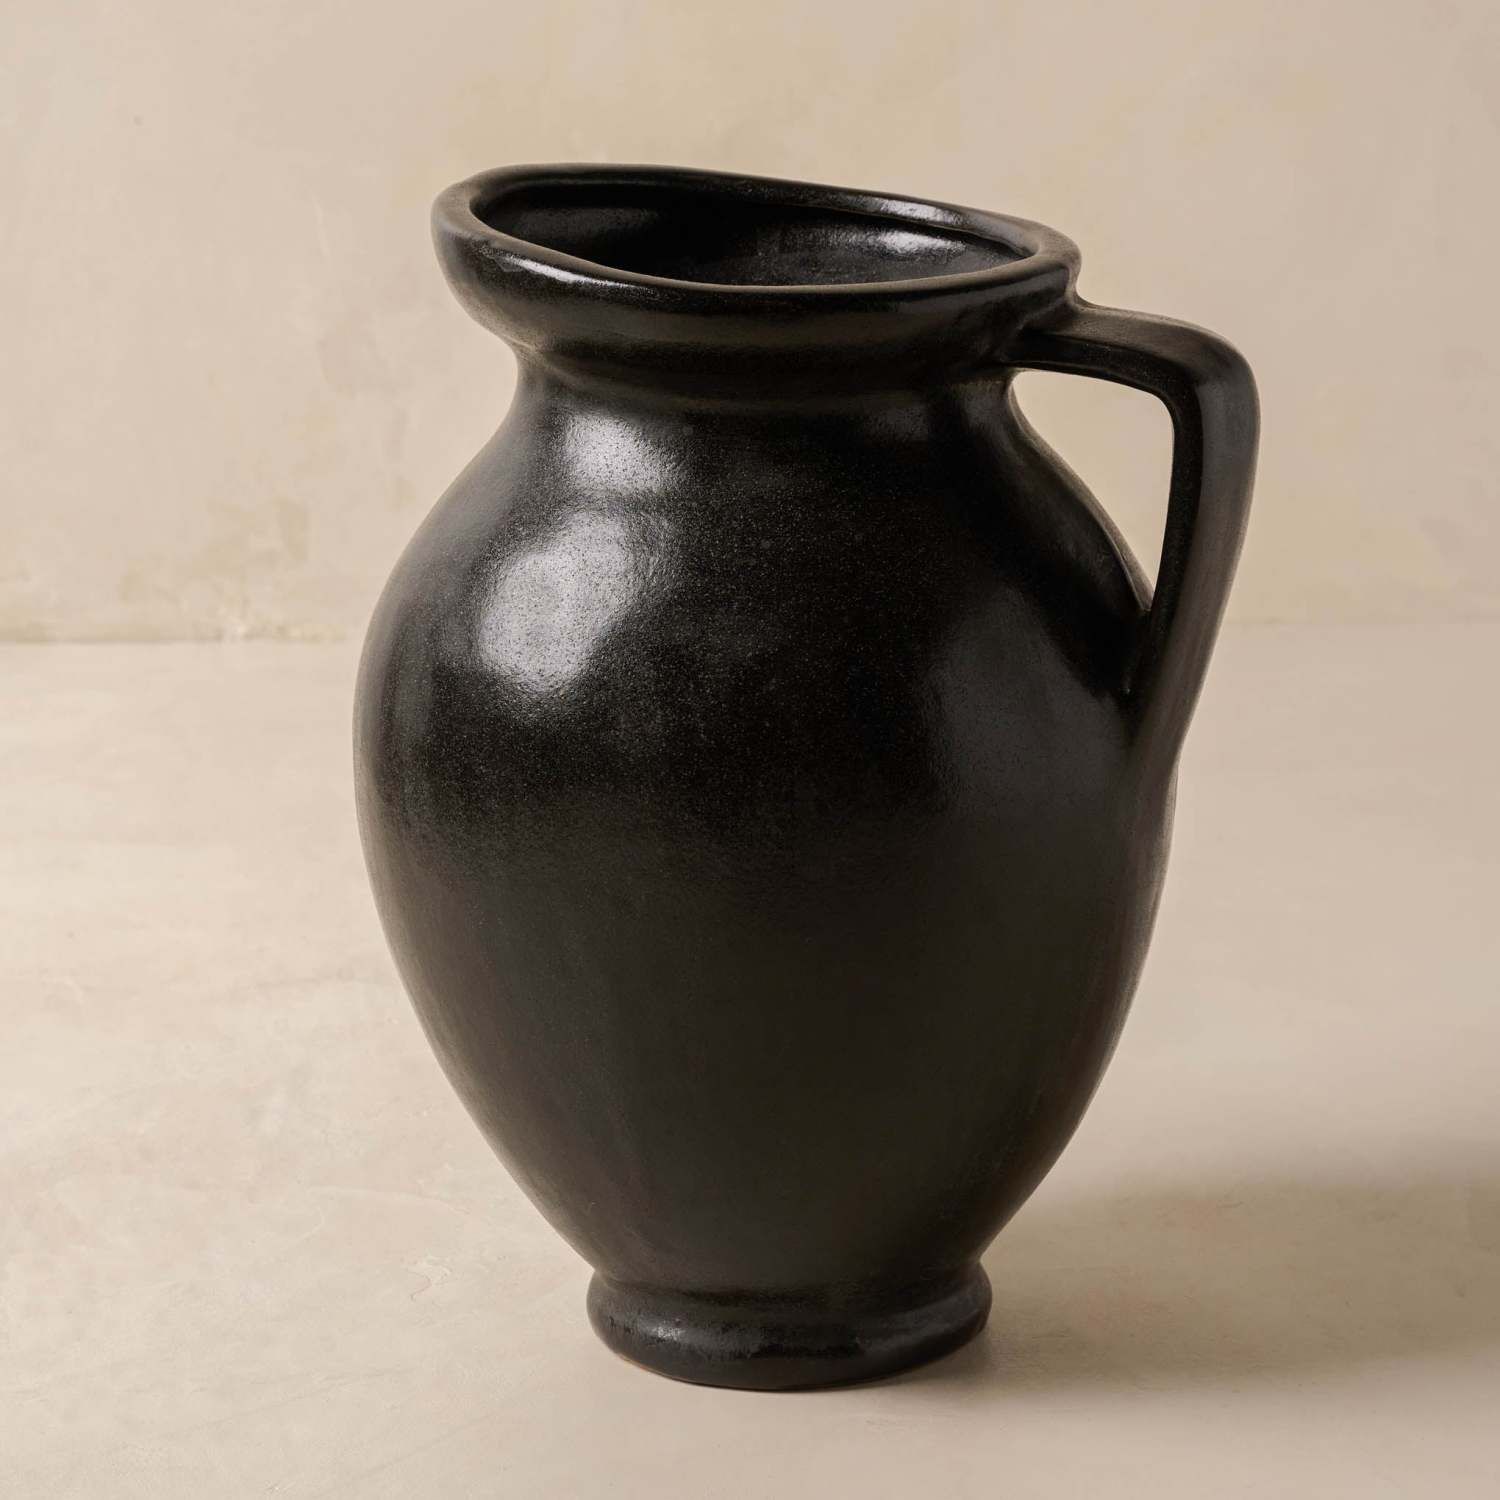 Marcel Distressed Black Ceramic Vase with Handle | Magnolia